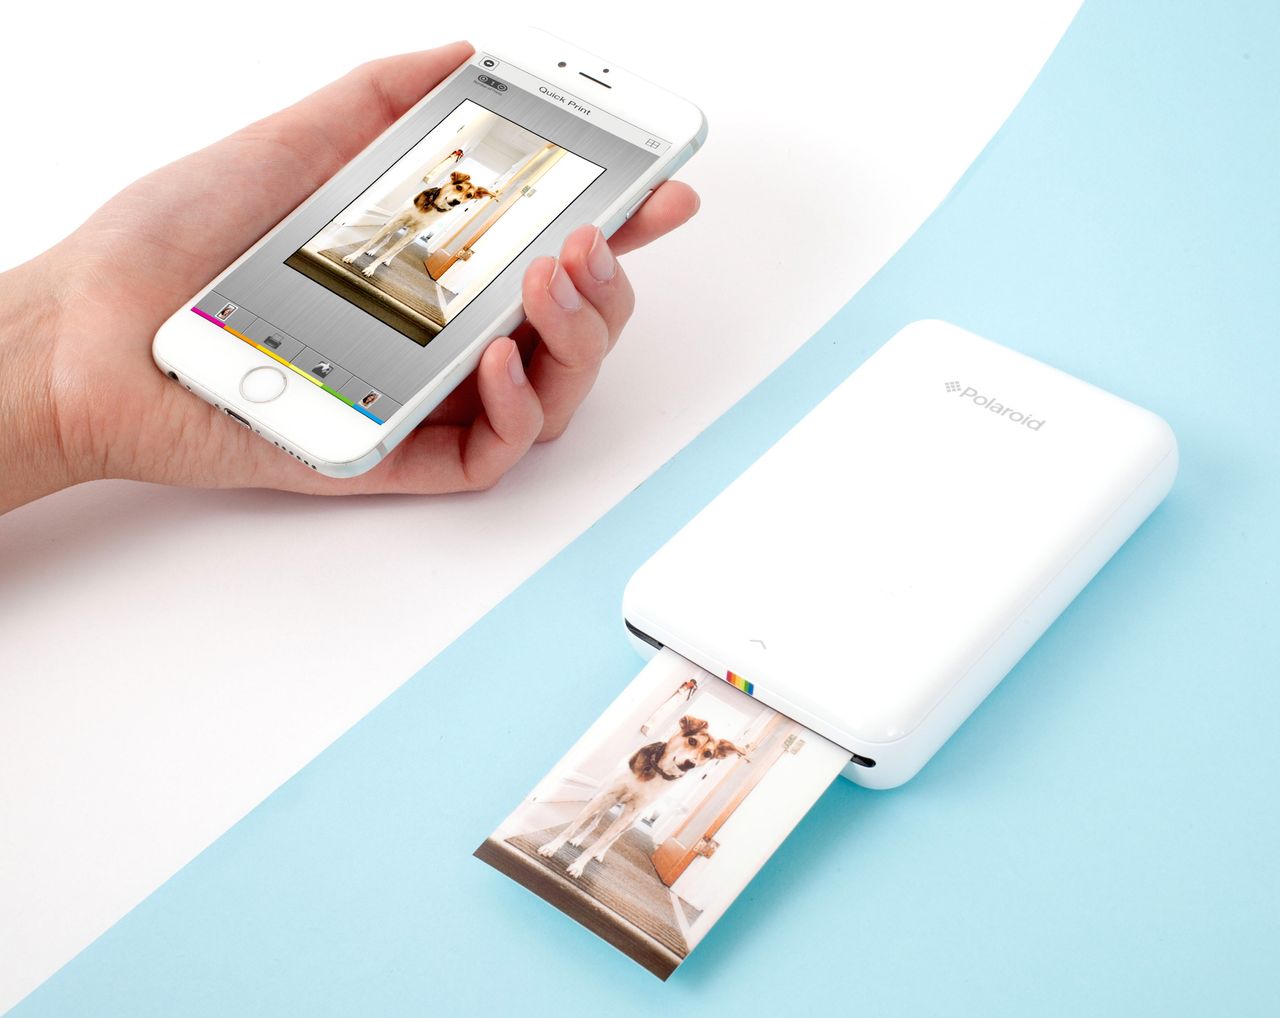 Polaroid Mini Zip Printer to drukarka do zdjęć, która łączy się ze smartfonami przez Bluetootha